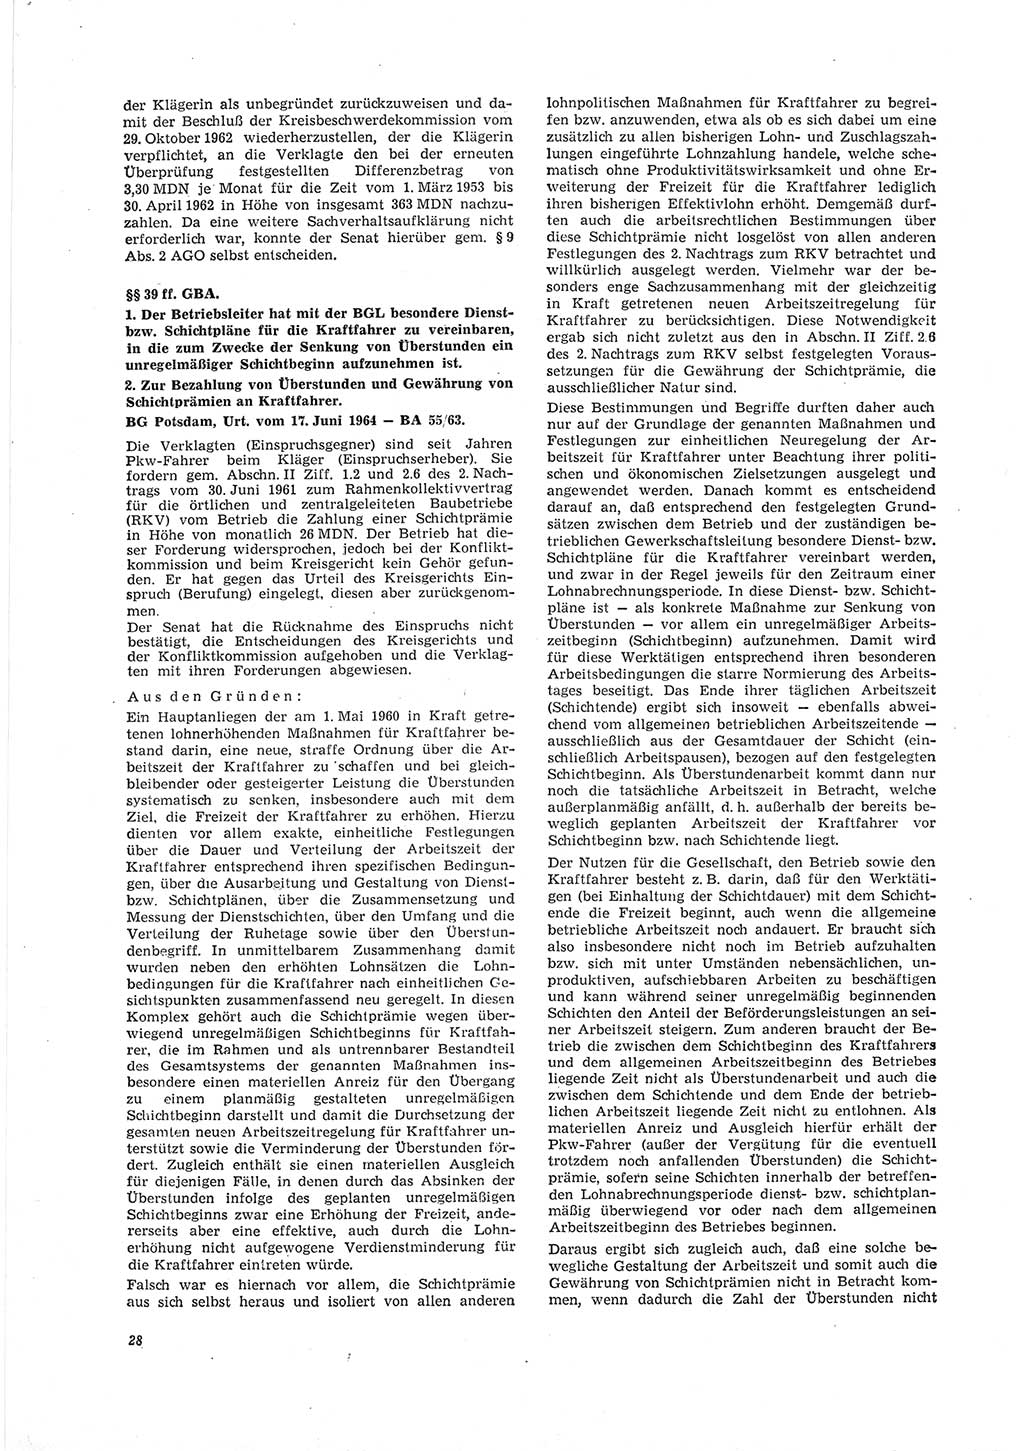 Neue Justiz (NJ), Zeitschrift für Recht und Rechtswissenschaft [Deutsche Demokratische Republik (DDR)], 19. Jahrgang 1965, Seite 28 (NJ DDR 1965, S. 28)